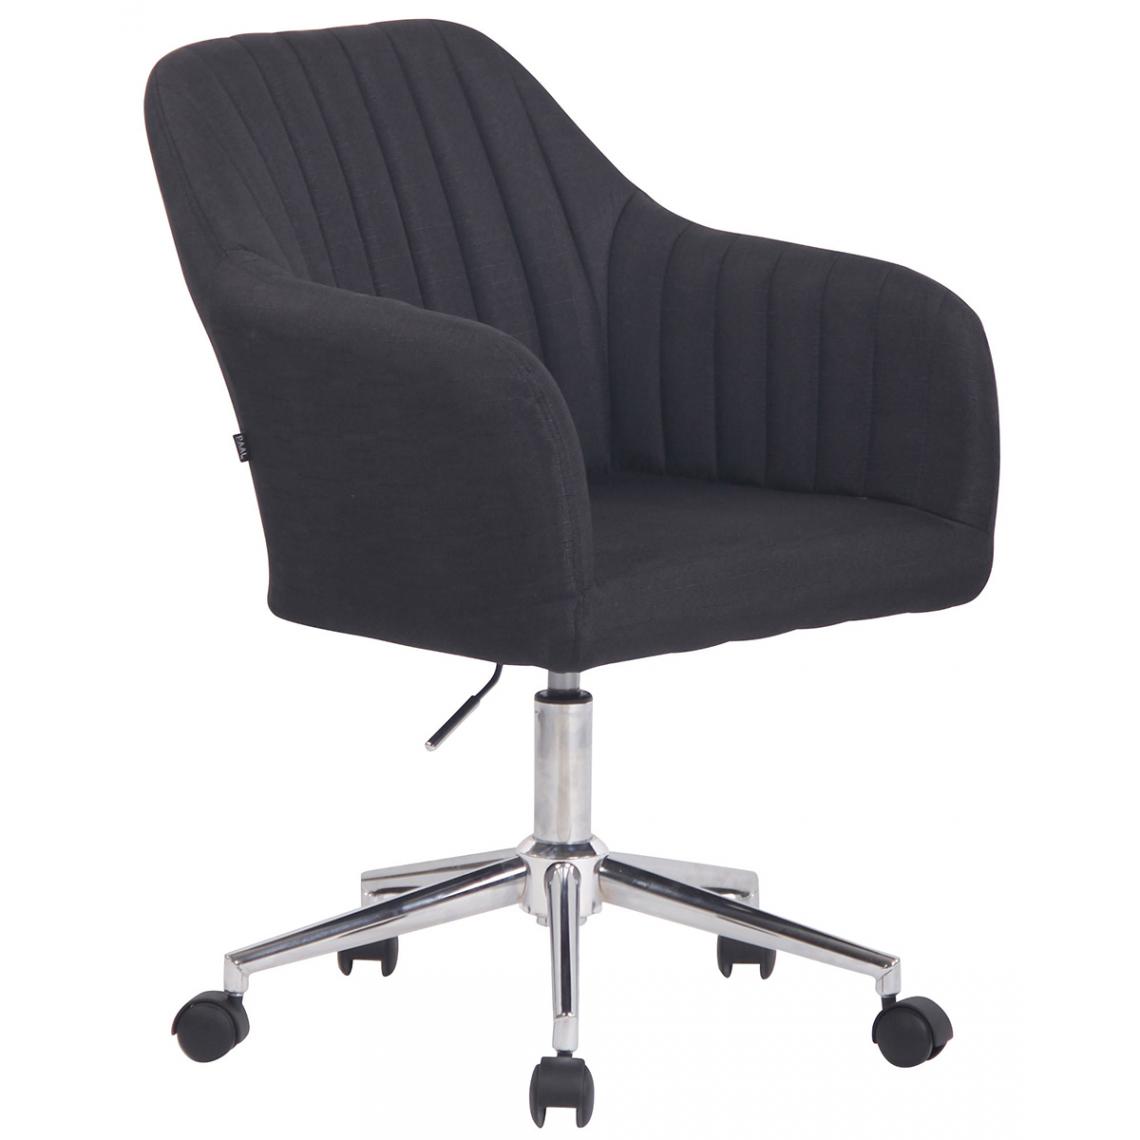 Pegane - Chaise de bureau coloris noir en tissu - Hauteur 85 - 95 x Profondeur 62 x Longueur 58 cm -PEGANE- - Chaises